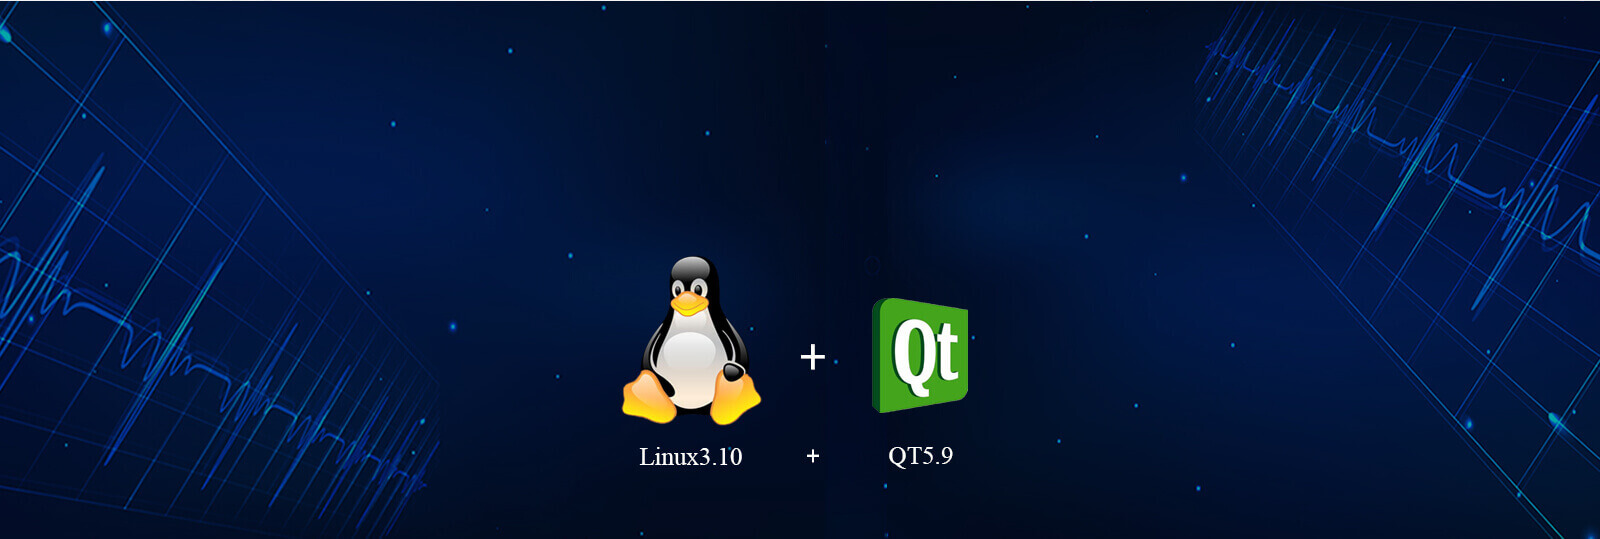 Linux3.10 QT5.9 Pc